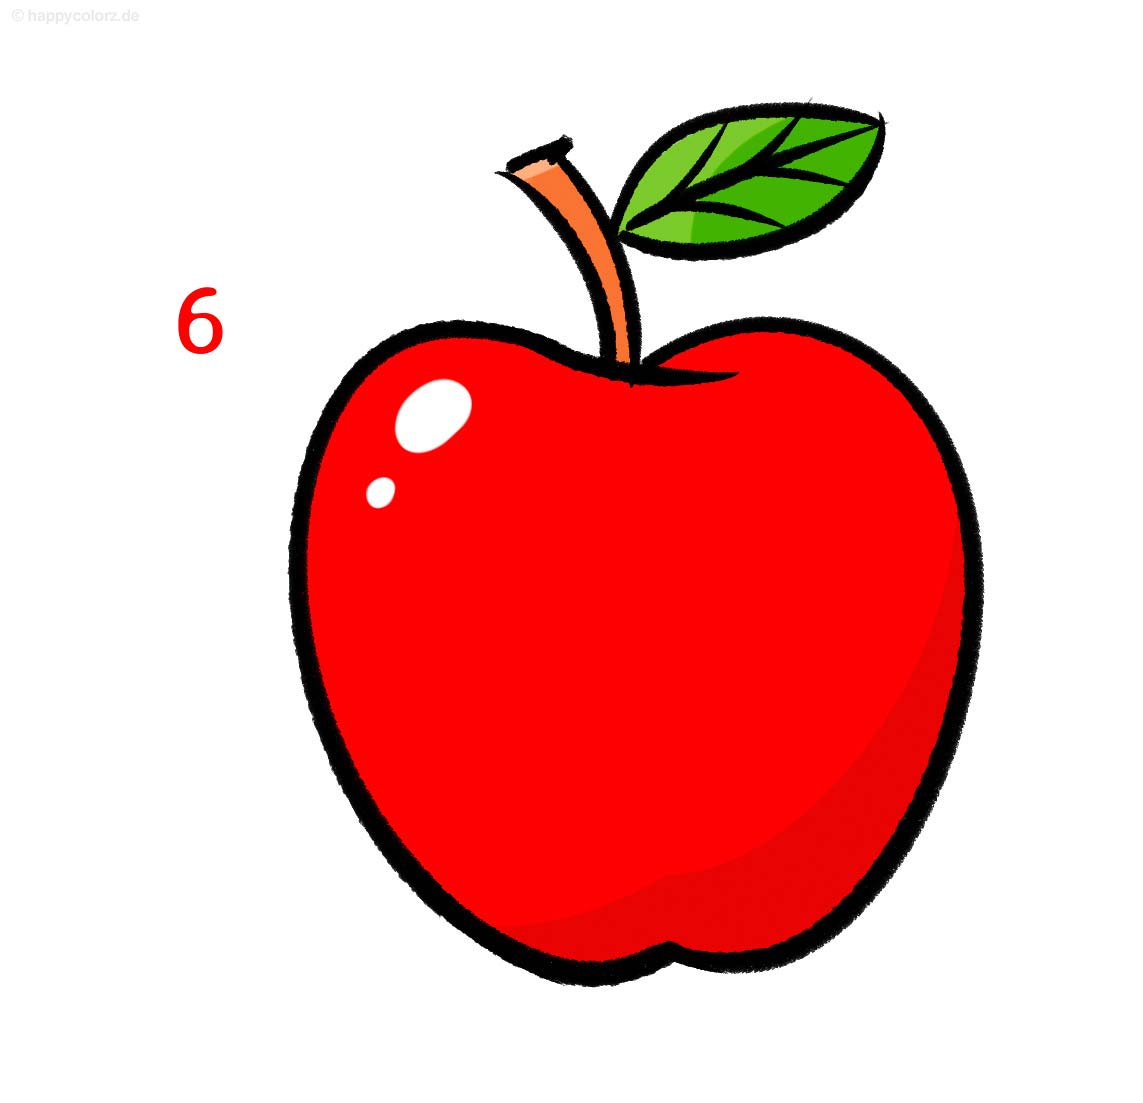 Apfel zeichnen - Schritt für Schritt